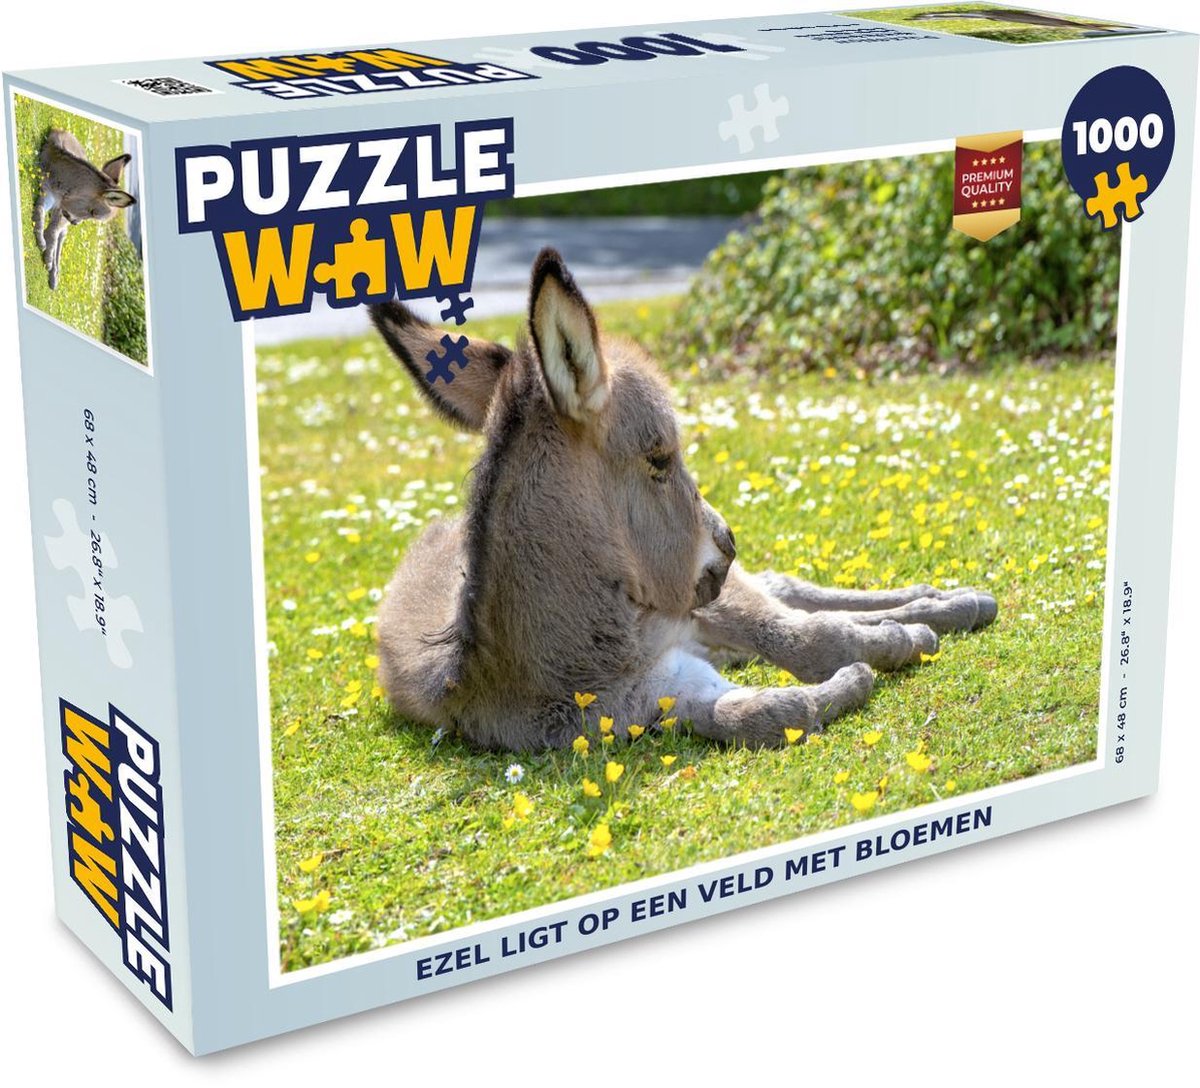 Afbeelding van product Puzzel 1000 stukjes volwassenen Dwergezel 1000 stukjes - Ezel ligt op een veld met bloemen puzzel 1000 stukjes - PuzzleWow heeft +100000 puzzels